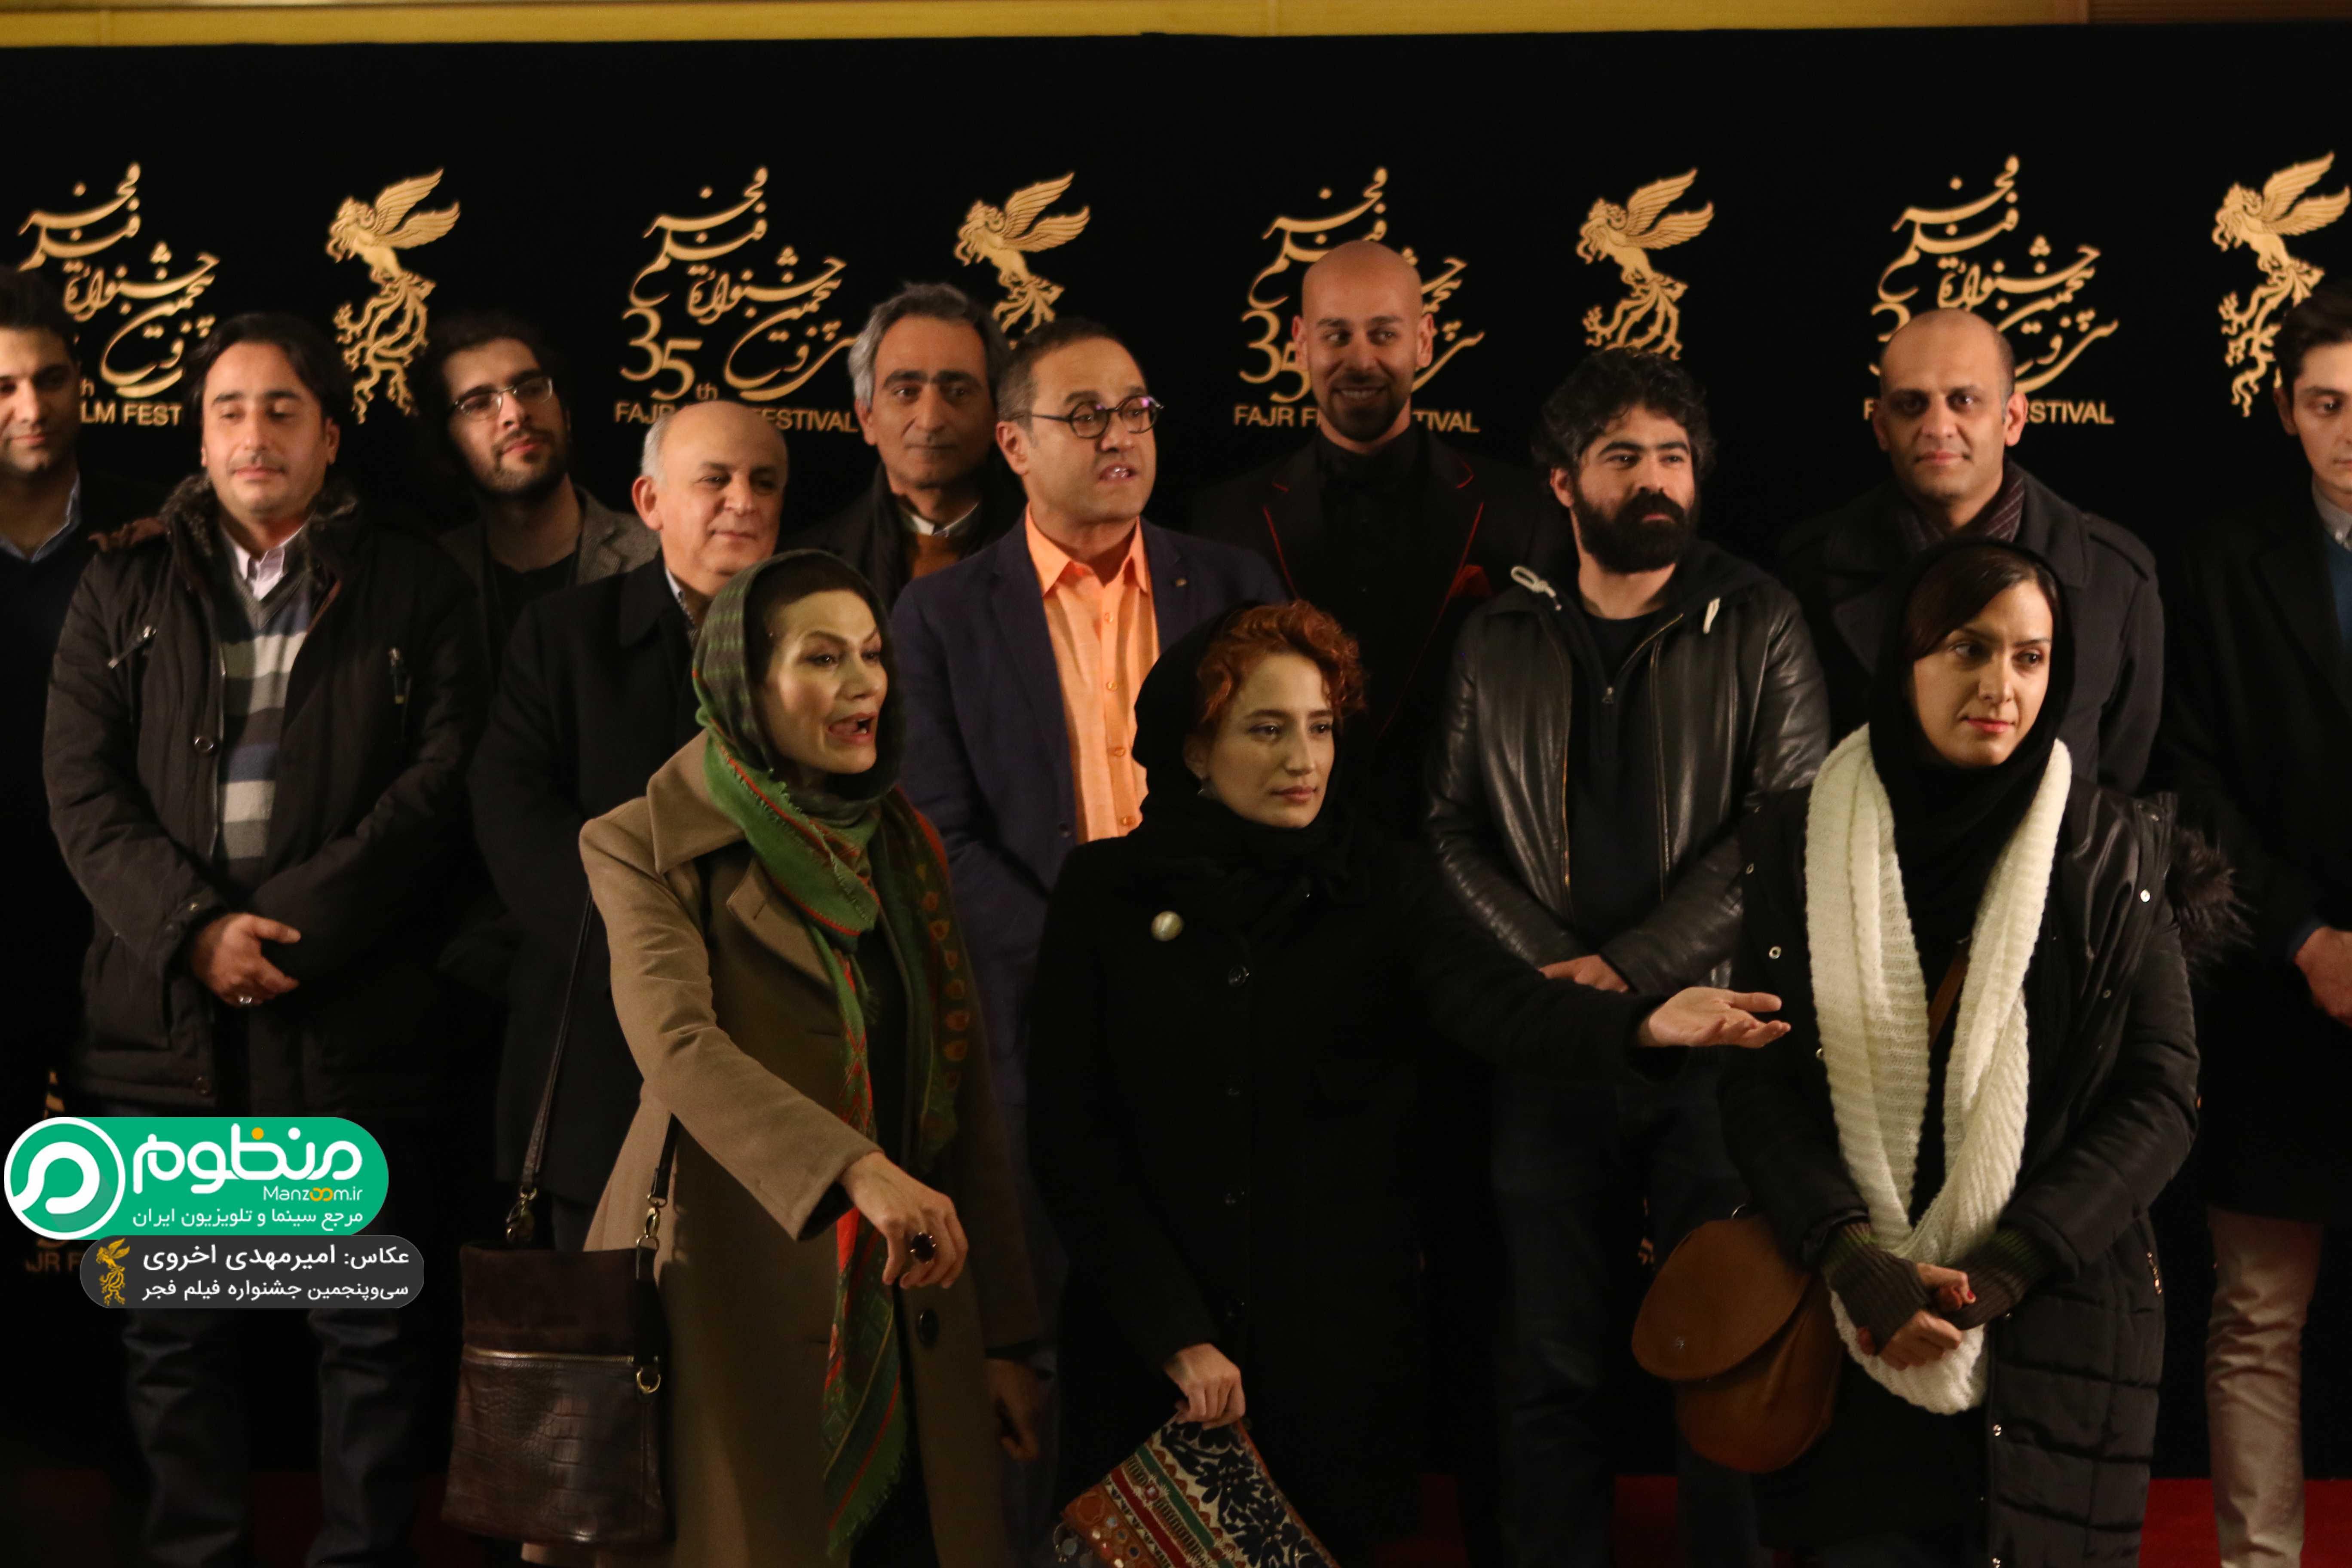 بهرام بدخشانی در اکران افتتاحیه فیلم سینمایی نگار به همراه نگار جواهریان و رامبد جوان